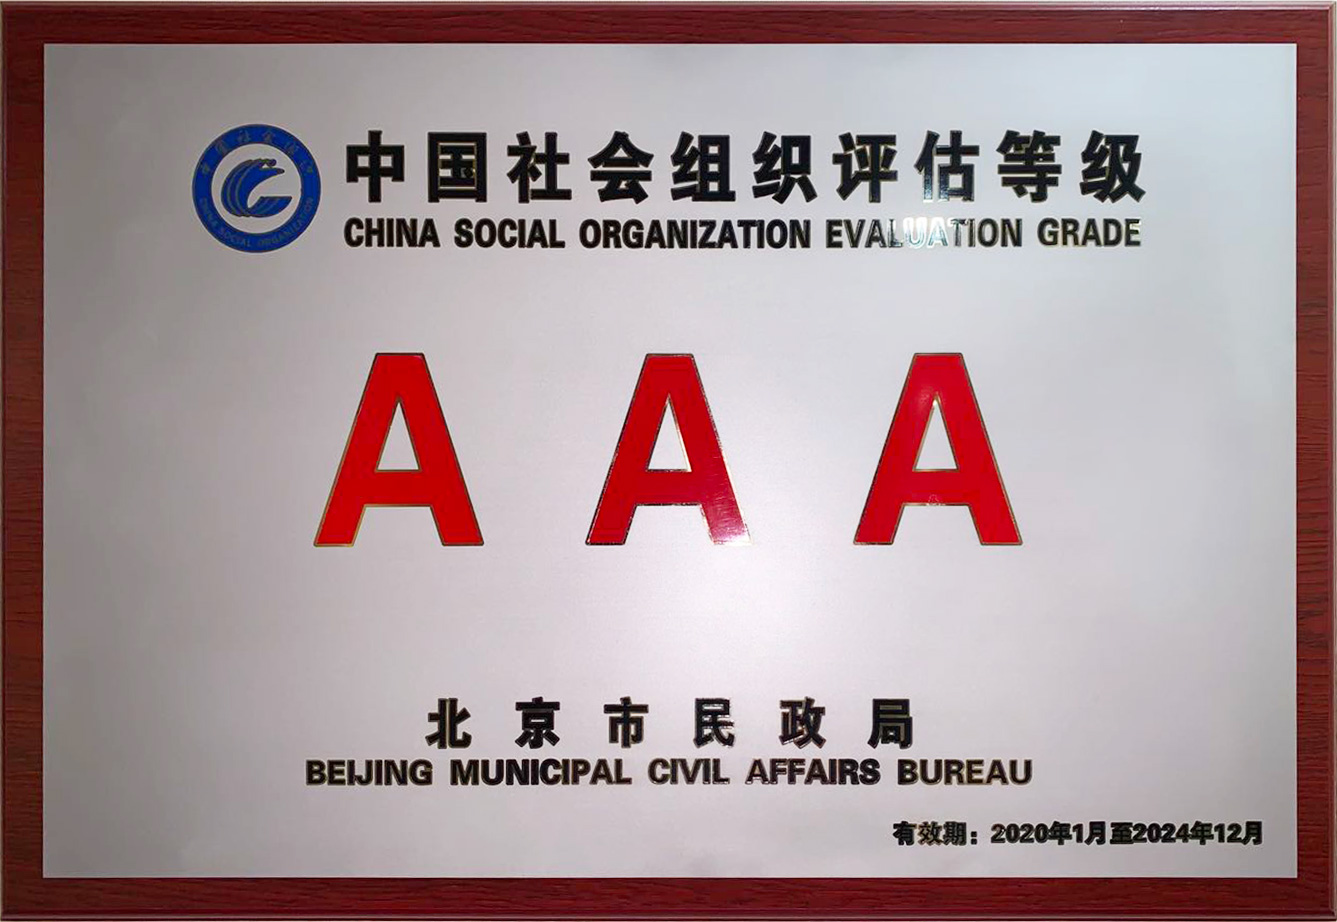 北京民营科技促进会获评中国社会组织评估“AAA级”单位